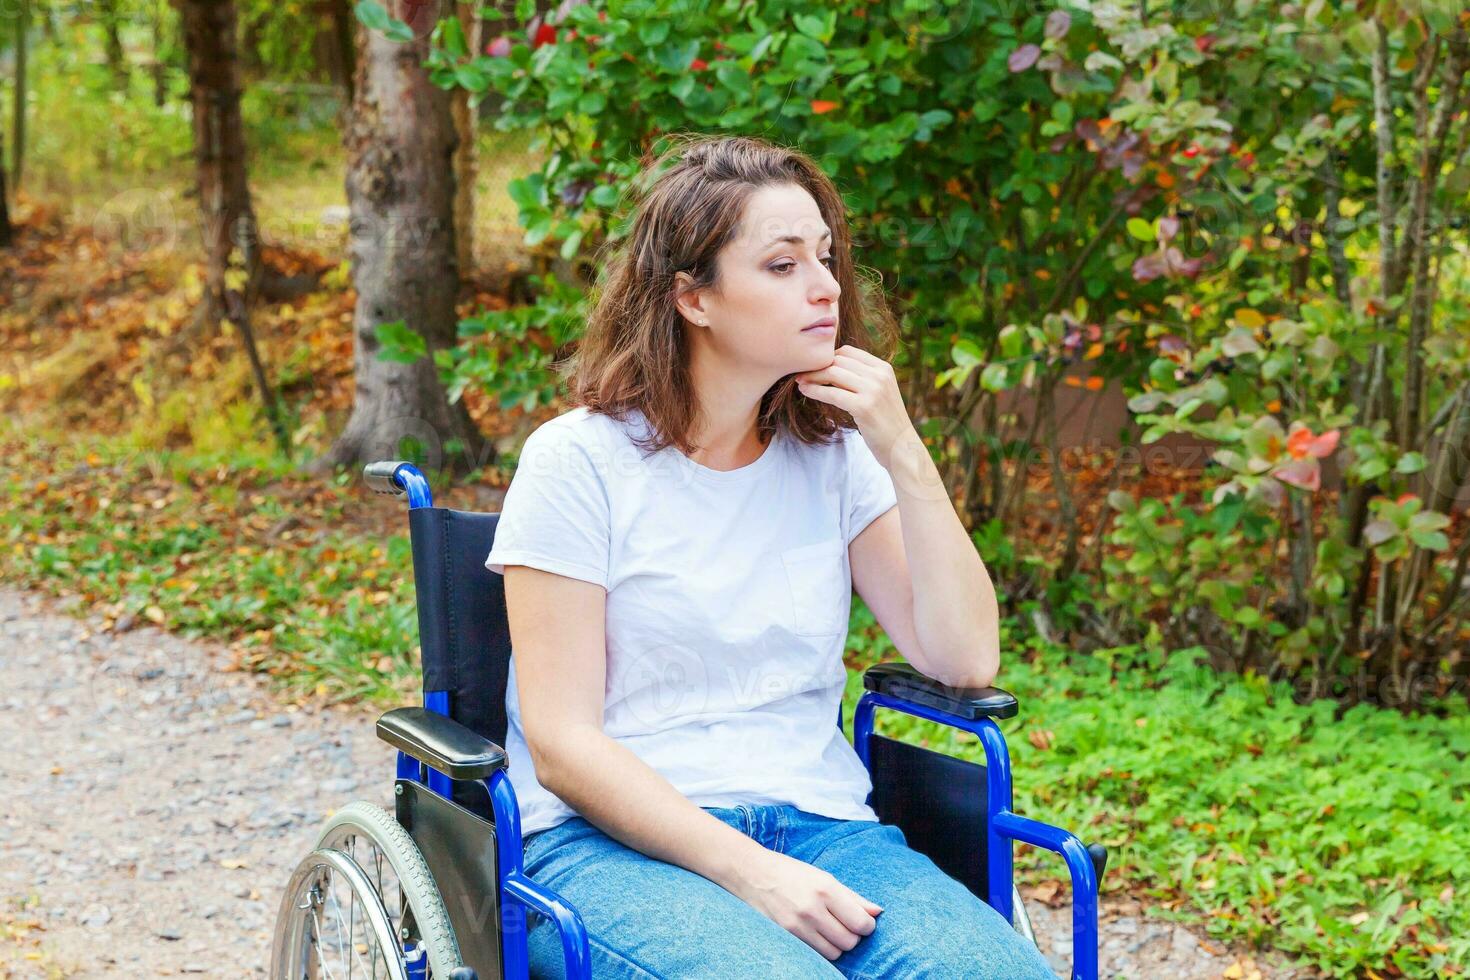 jeune femme handicapée heureuse en fauteuil roulant sur la route dans le parc de l'hôpital en attente de services aux patients. fille paralysée dans une chaise invalide pour personnes handicapées en plein air dans la nature. notion de réhabilitation. photo